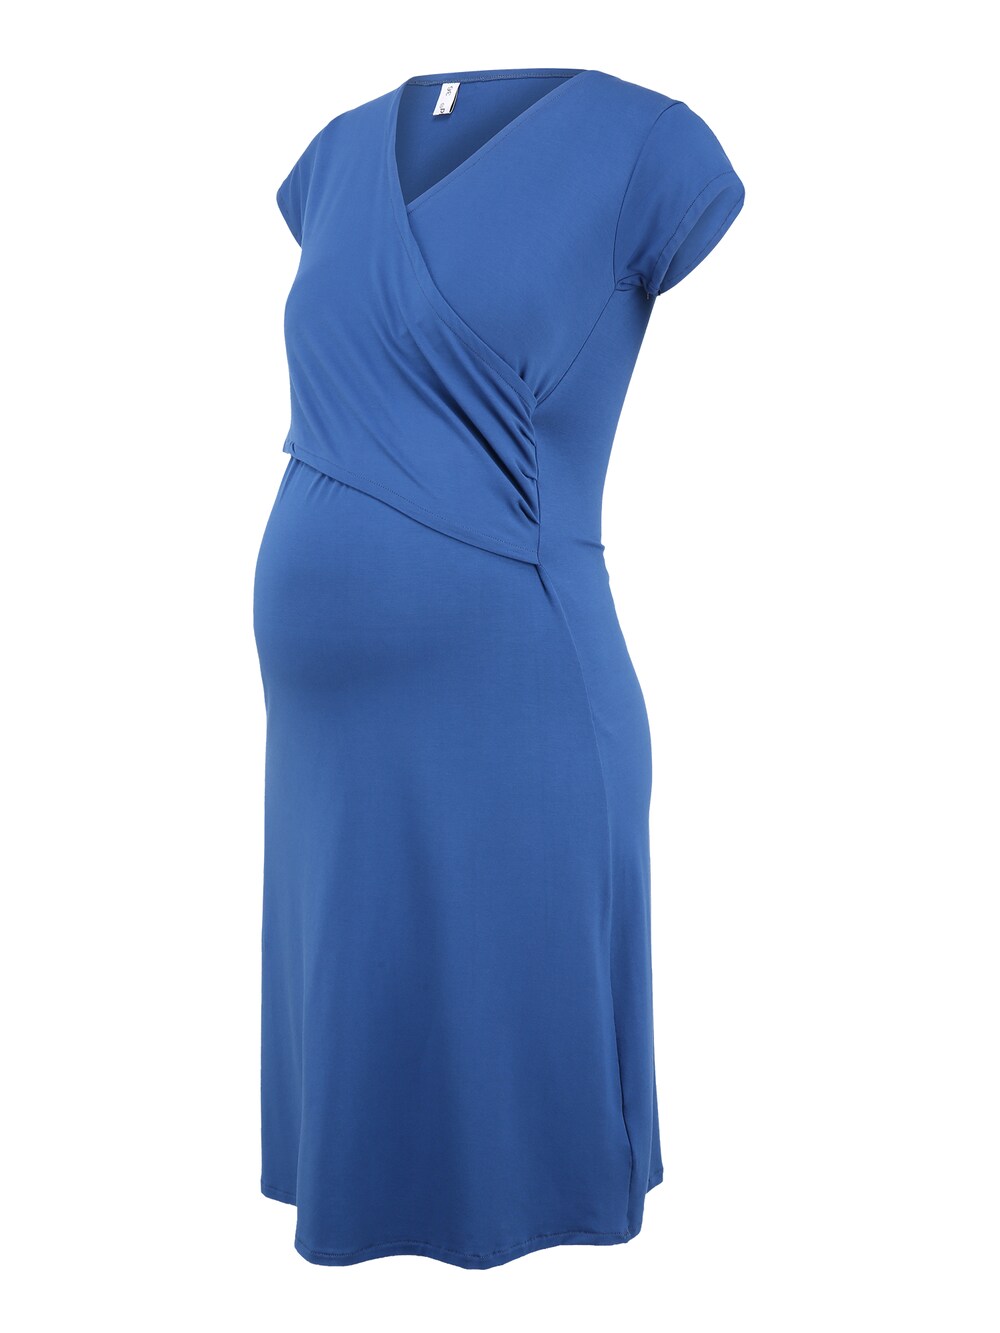 Платье Bebefield Florentina, голубое небо лонгслив женский цвет голубое небо размер 44 m